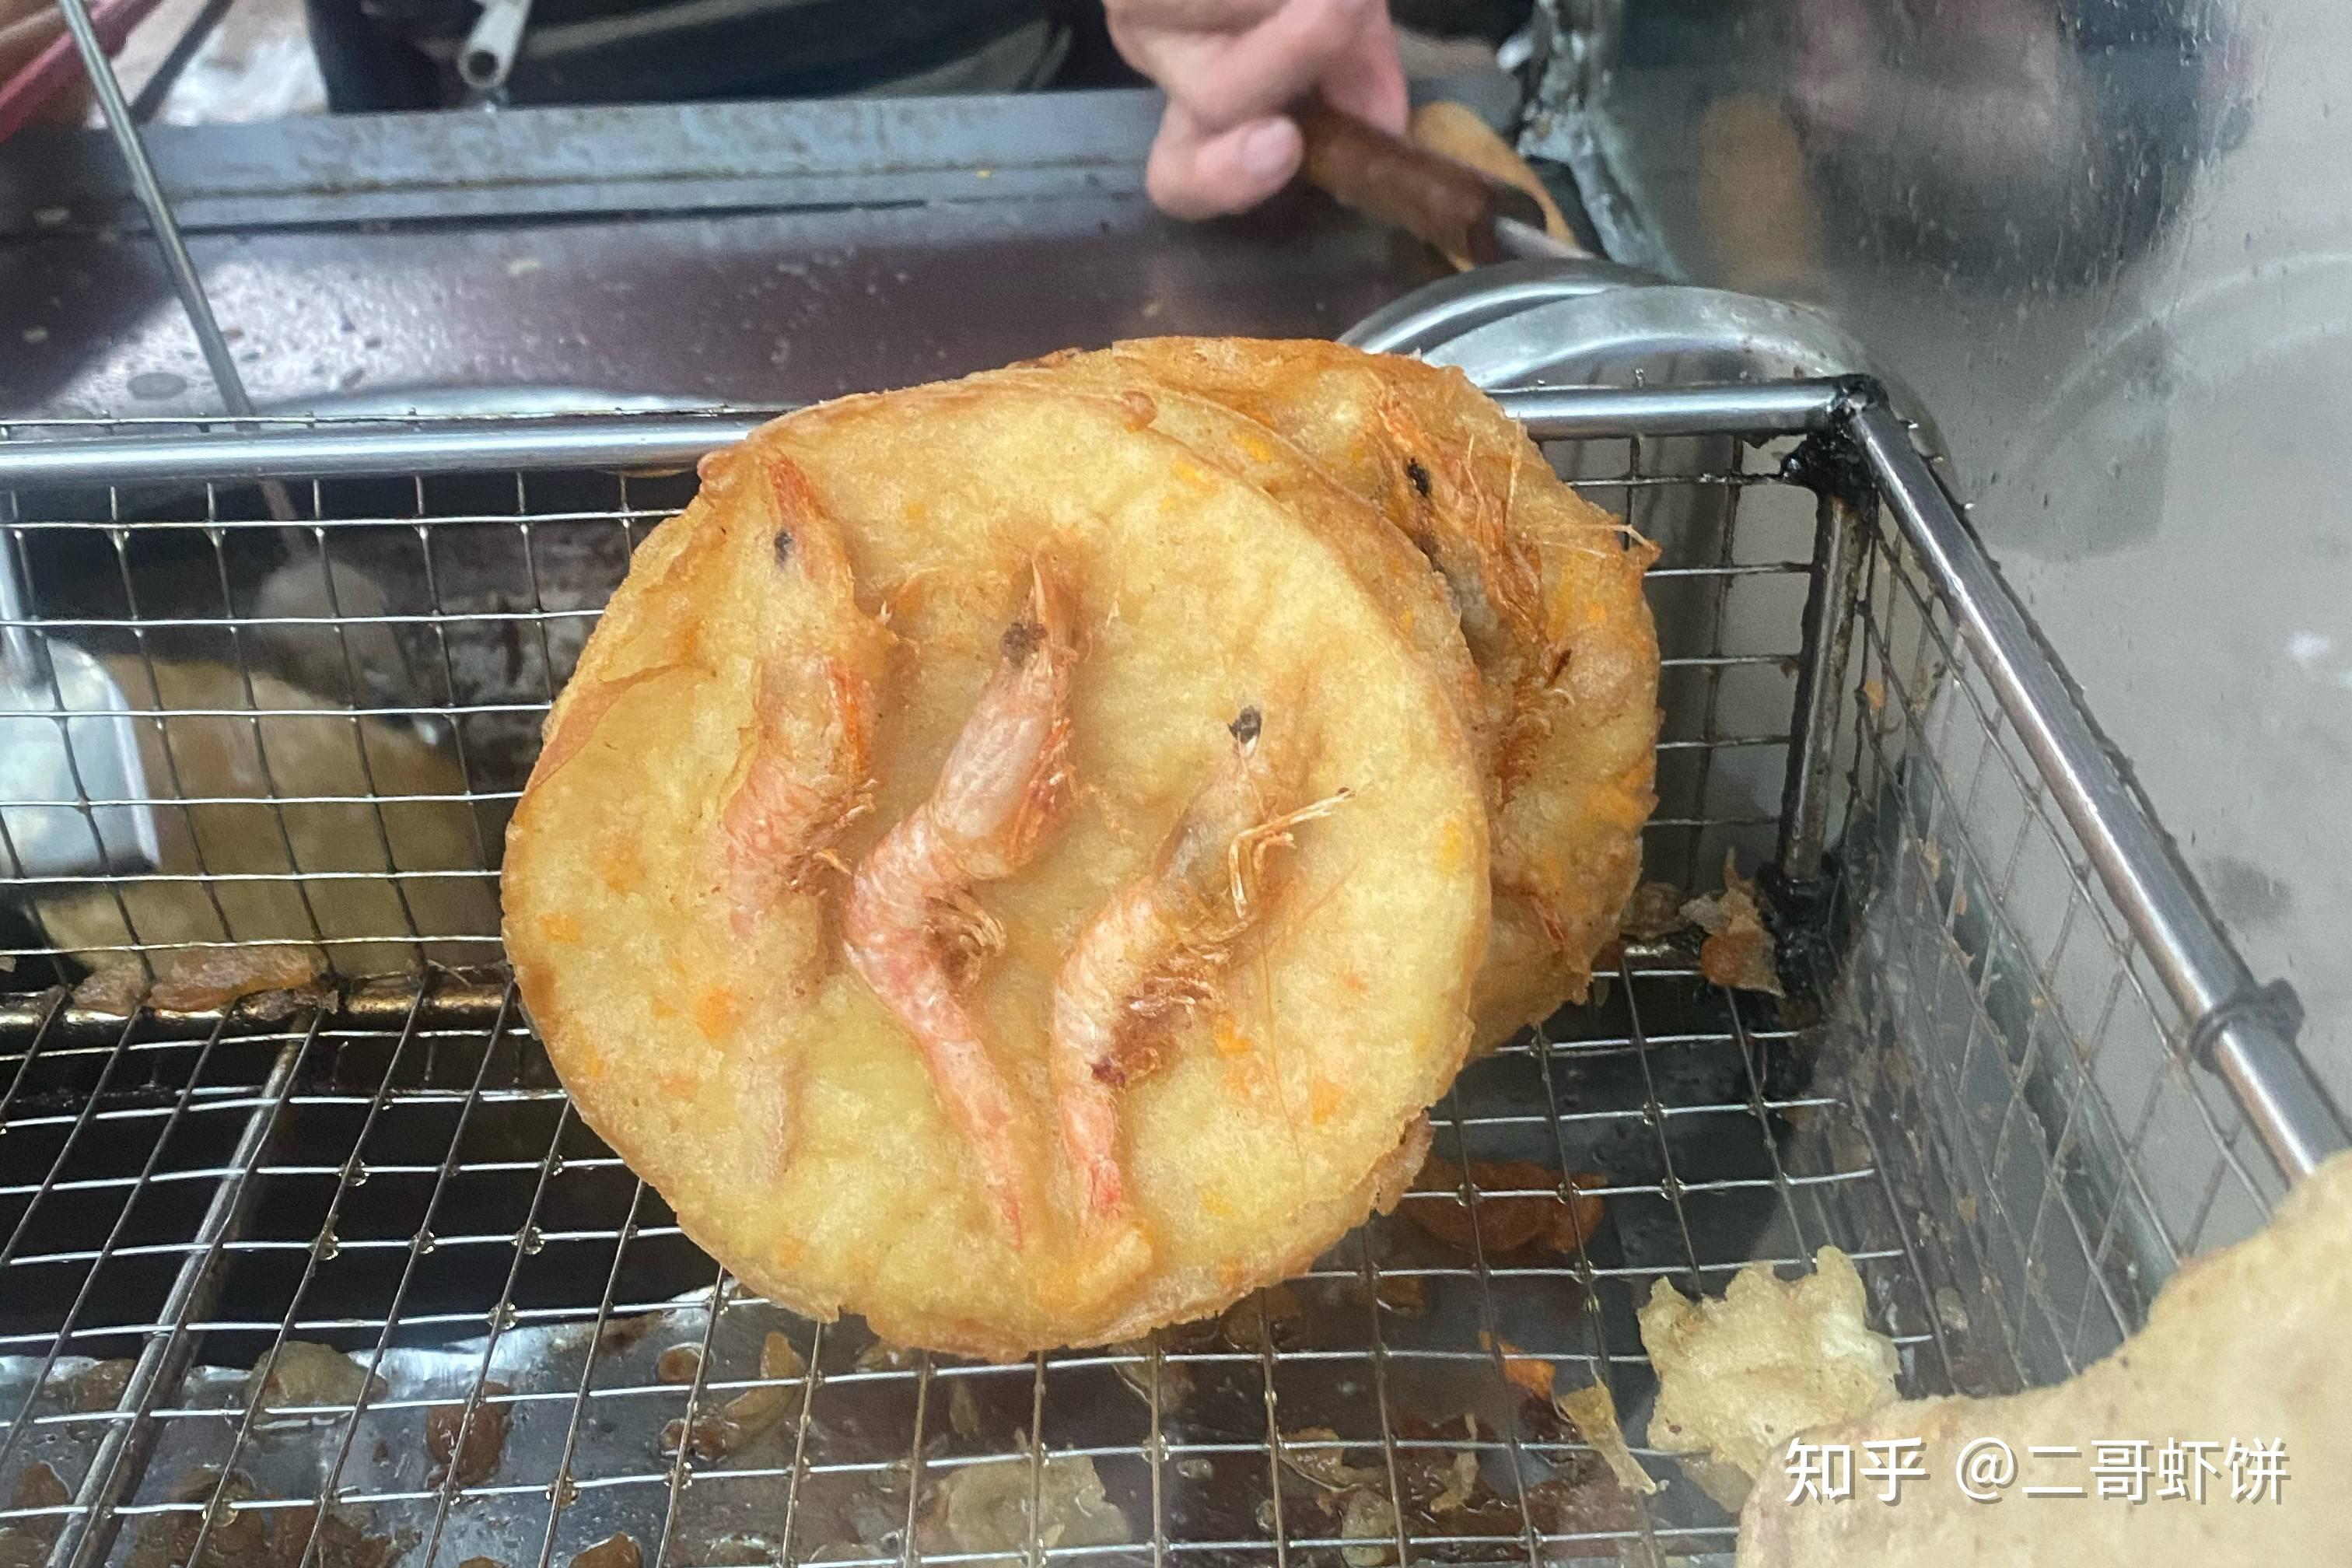 湛江阿姨在北坡炸虾饼有20多年了,炸的脆又好吃,到底是怎么做的